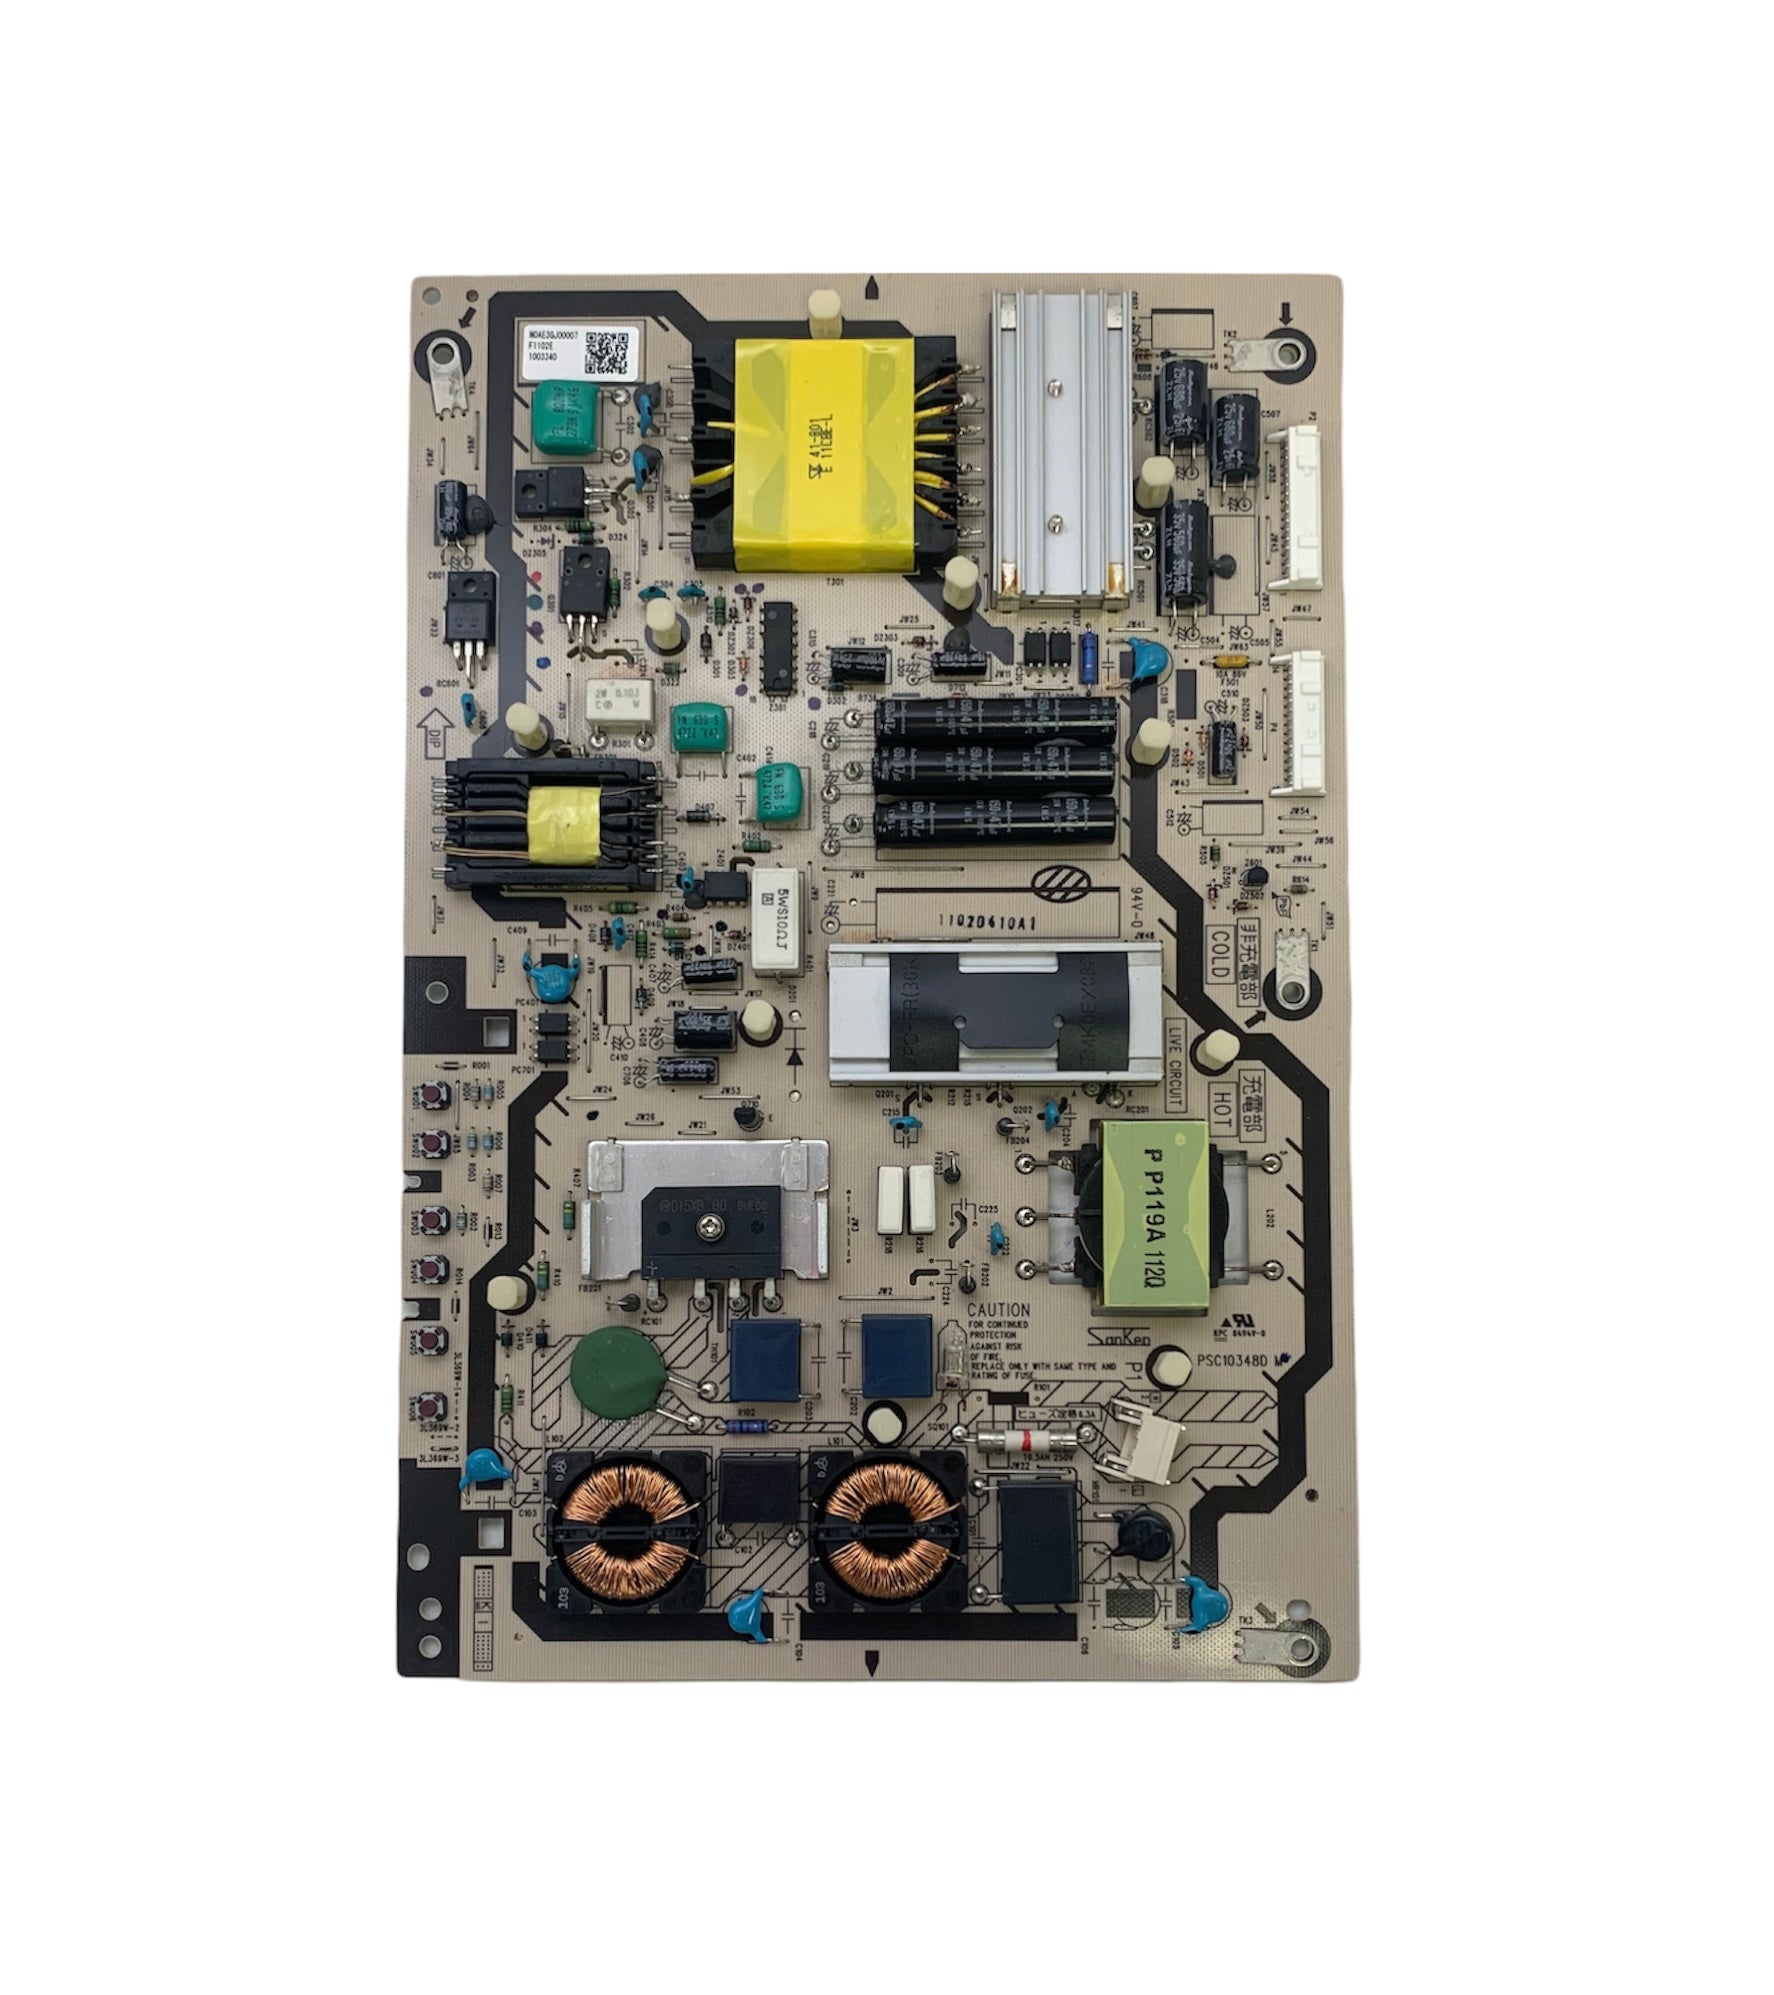 Panasonic N0AE3GJ00007 (PSC10348D M) P Board for TC-L37DT30